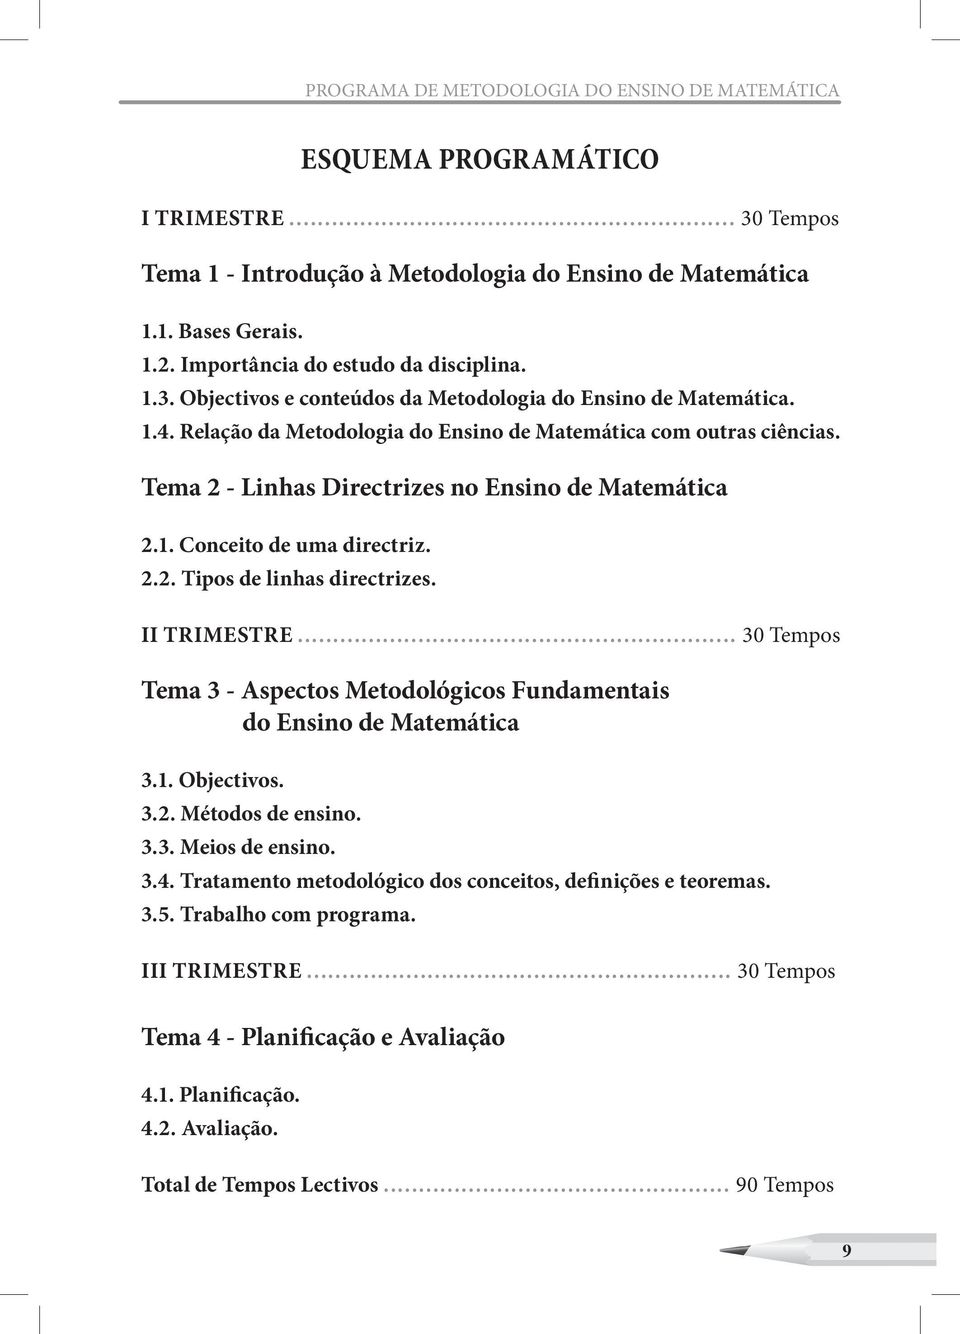 Tema 2 - Linhas Directrizes no Ensino de Matemática 2.1. Conceito de uma directriz. 2.2. Tipos de linhas directrizes. II TRIMESTRE.